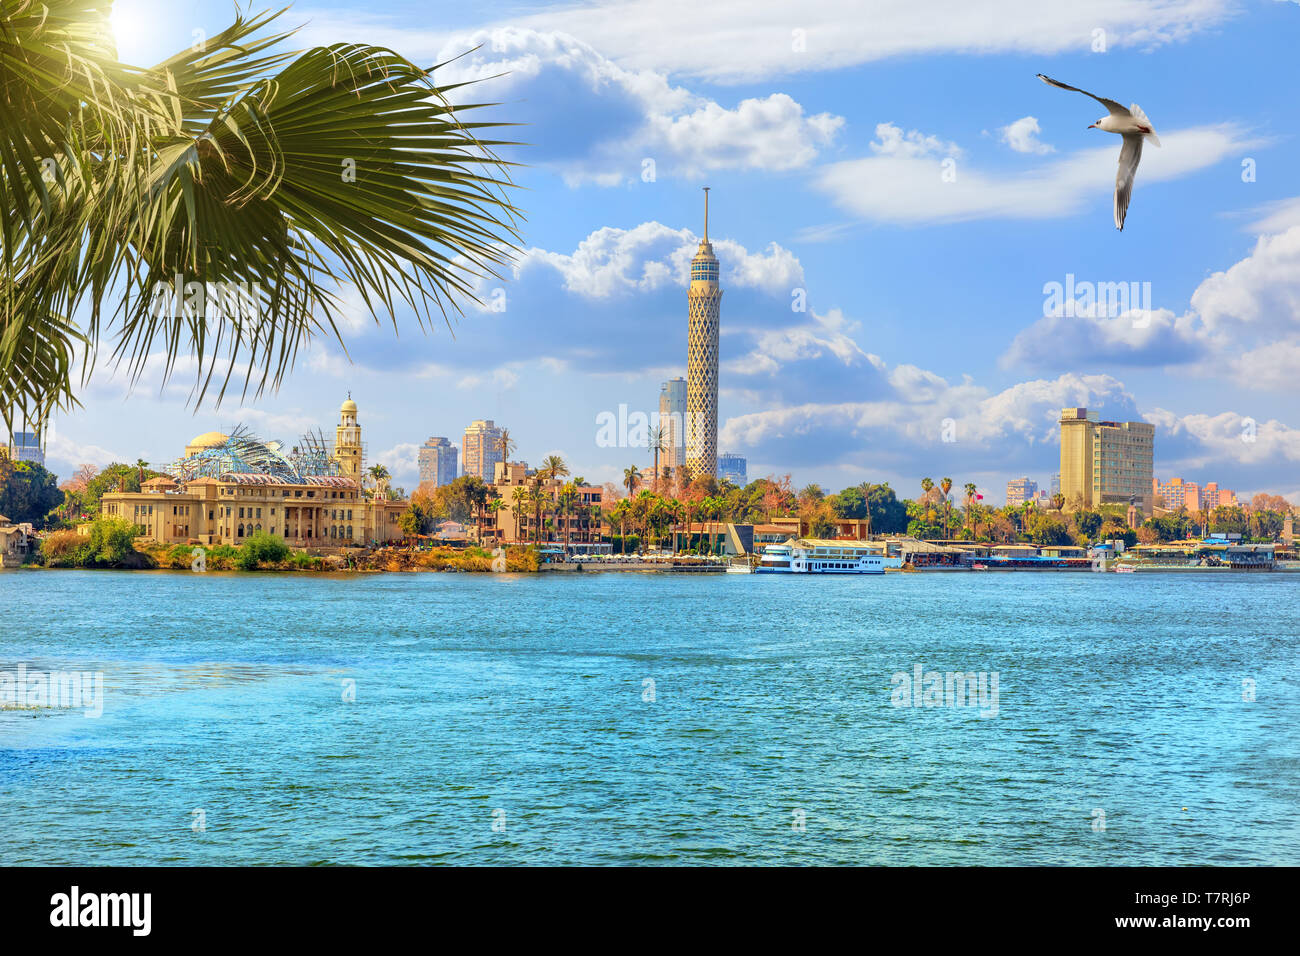 La tour du Caire, belle vue de la rivière du Nil, l'Egypte Banque D'Images